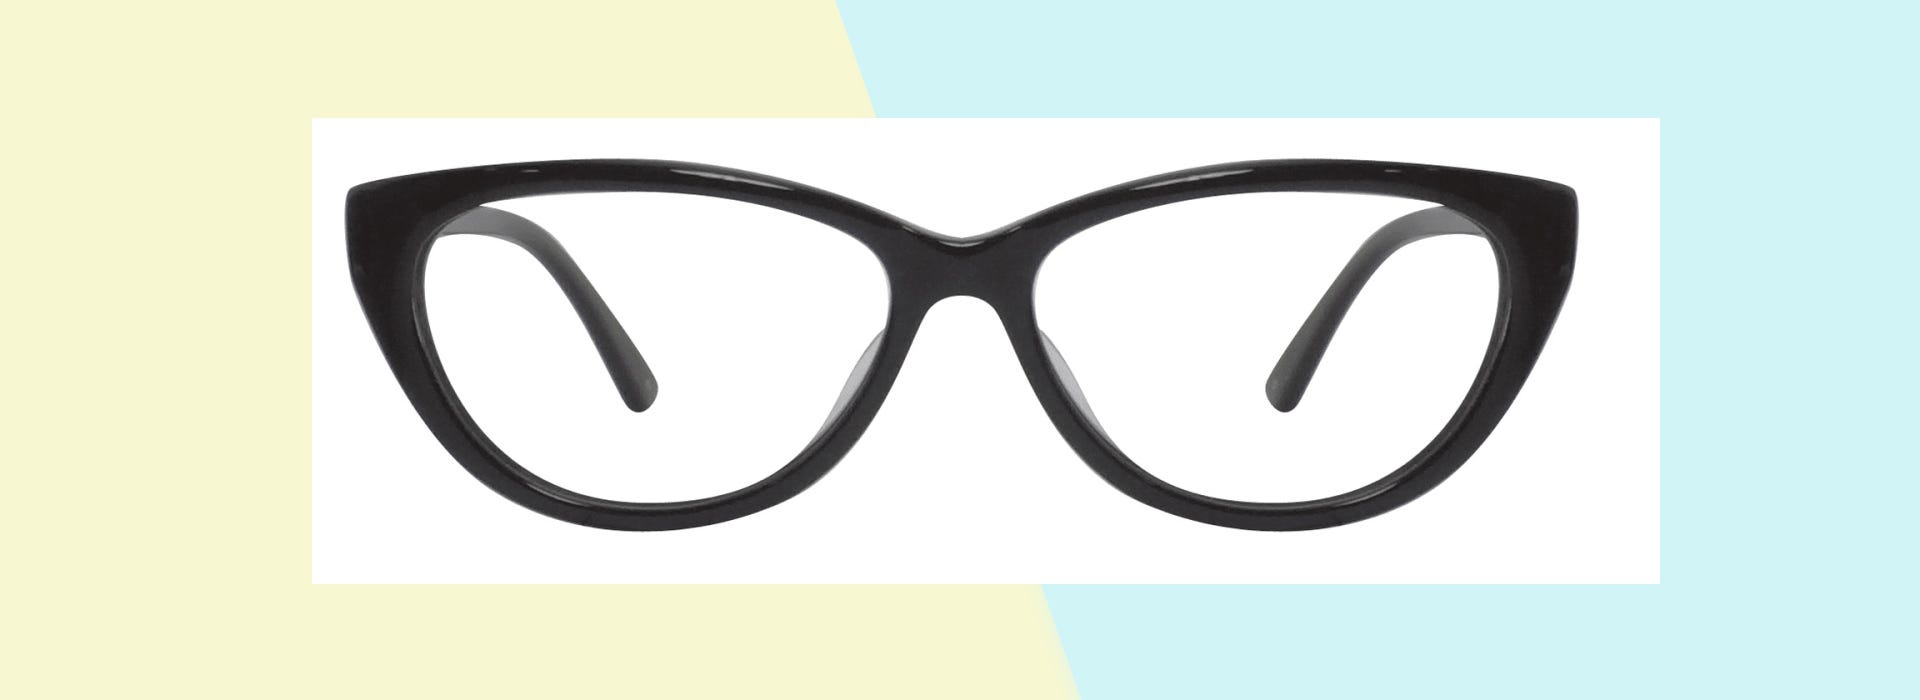 Buy The Black Cat Eye Eyeglasses Here